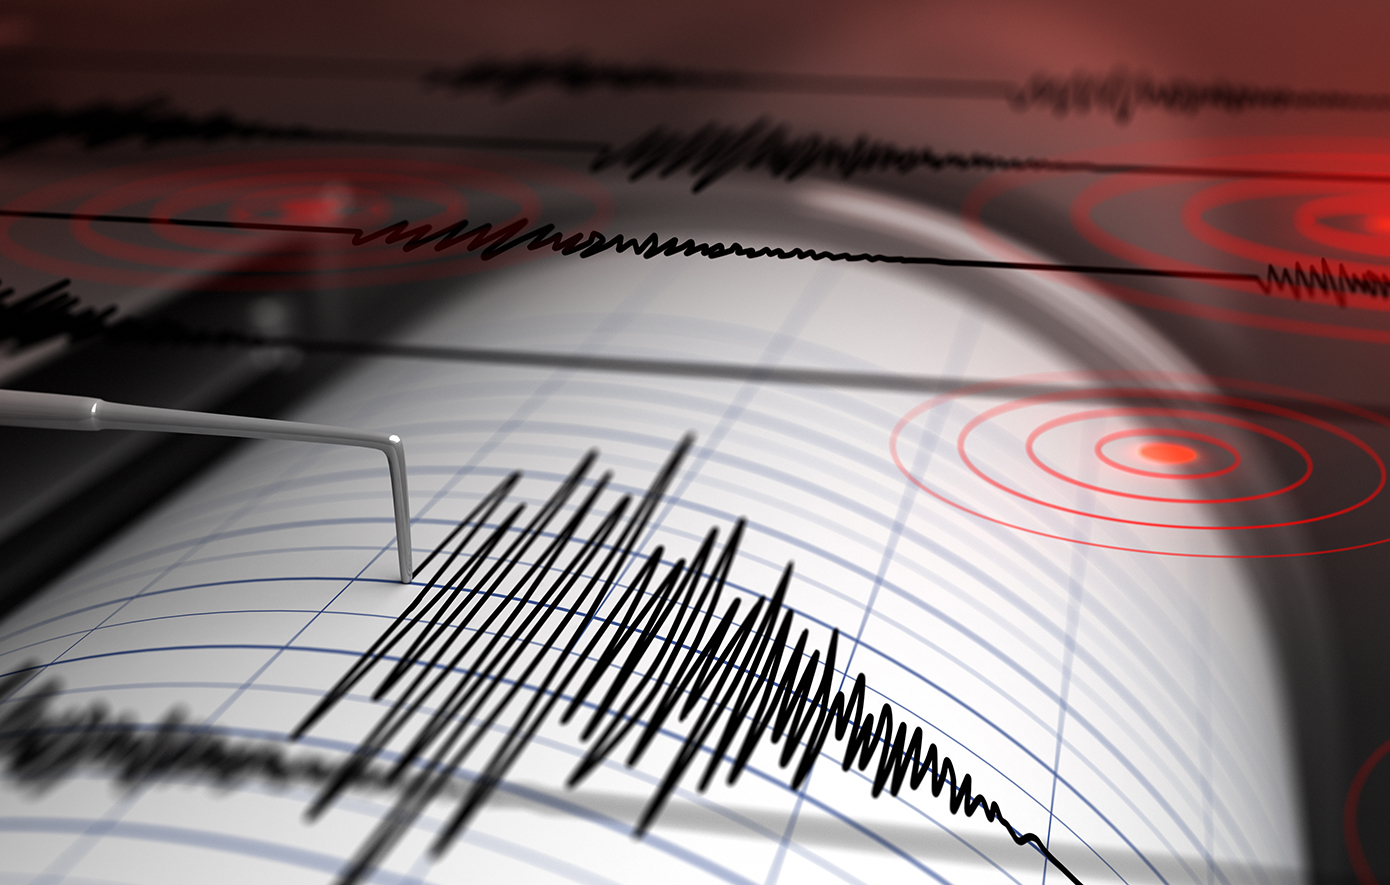 Καραστάθης για τα 5,7 Ρίχτερ: «Πολύ δύσκολο να γίνει κάποια εκτίμηση αν επρόκειτο για τον κύριο σεισμό»